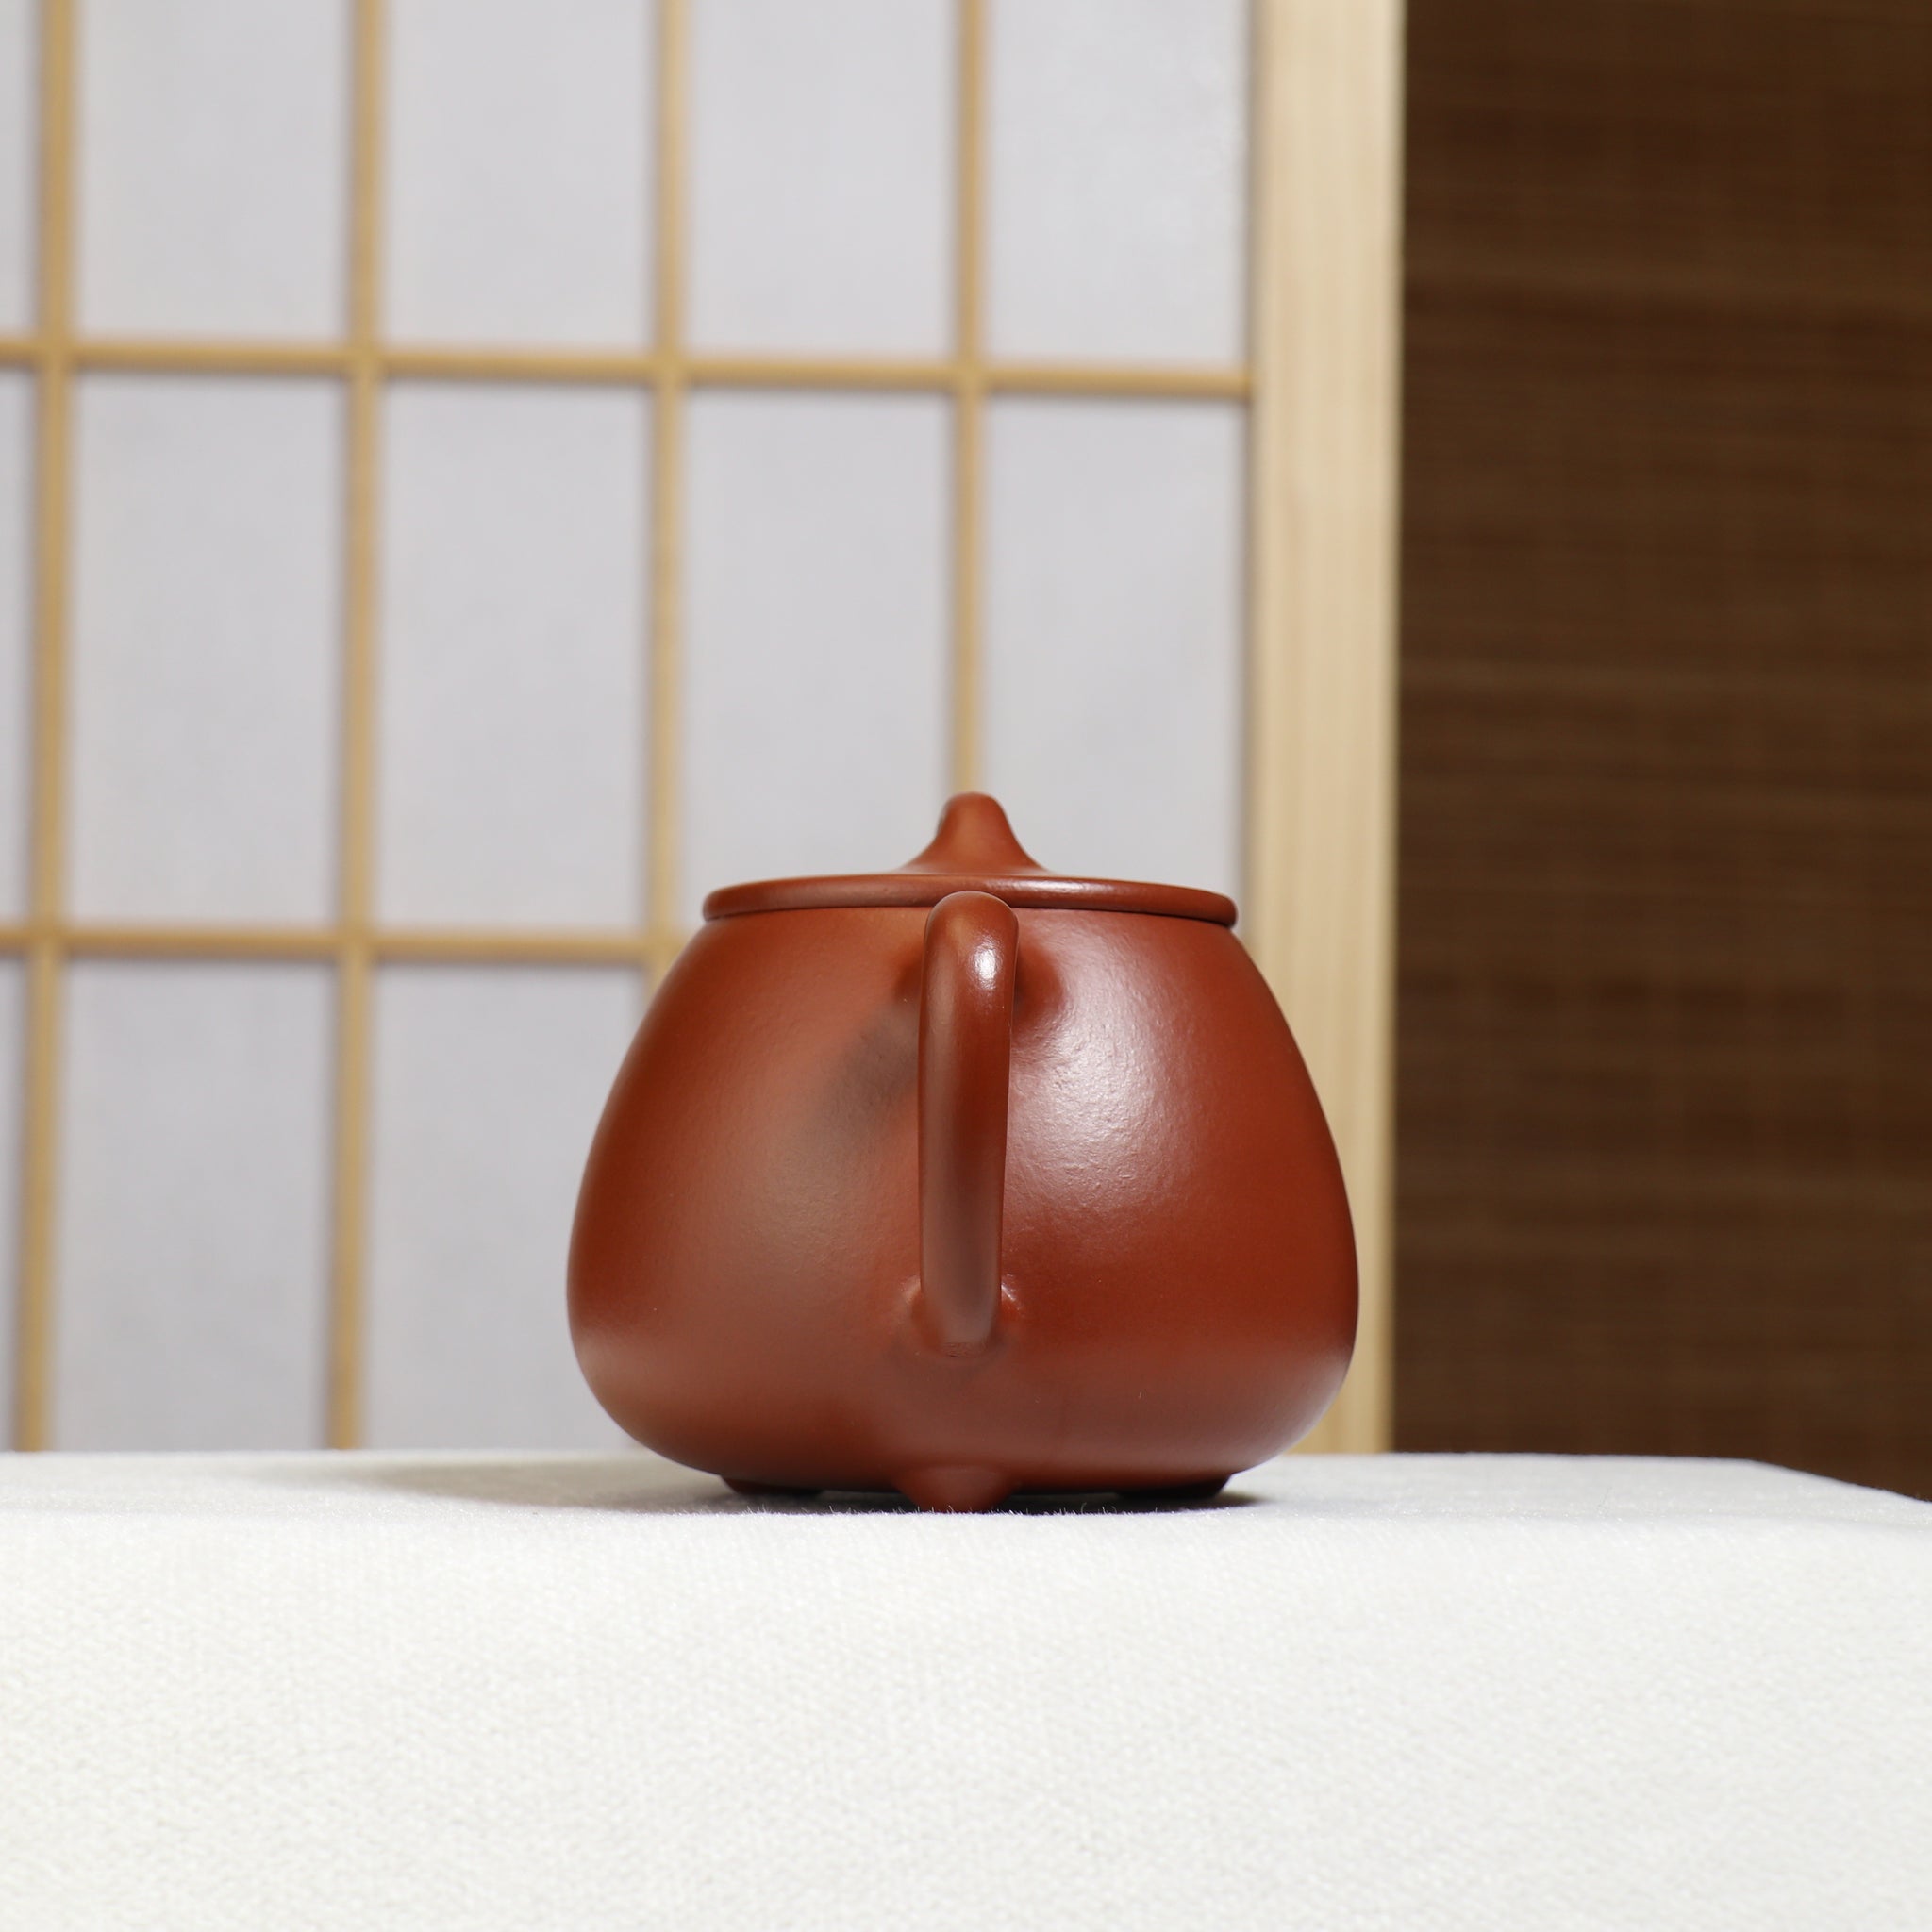 （已售出）【高石瓢】原礦小煤窯朱泥簡樸紫砂茶壺